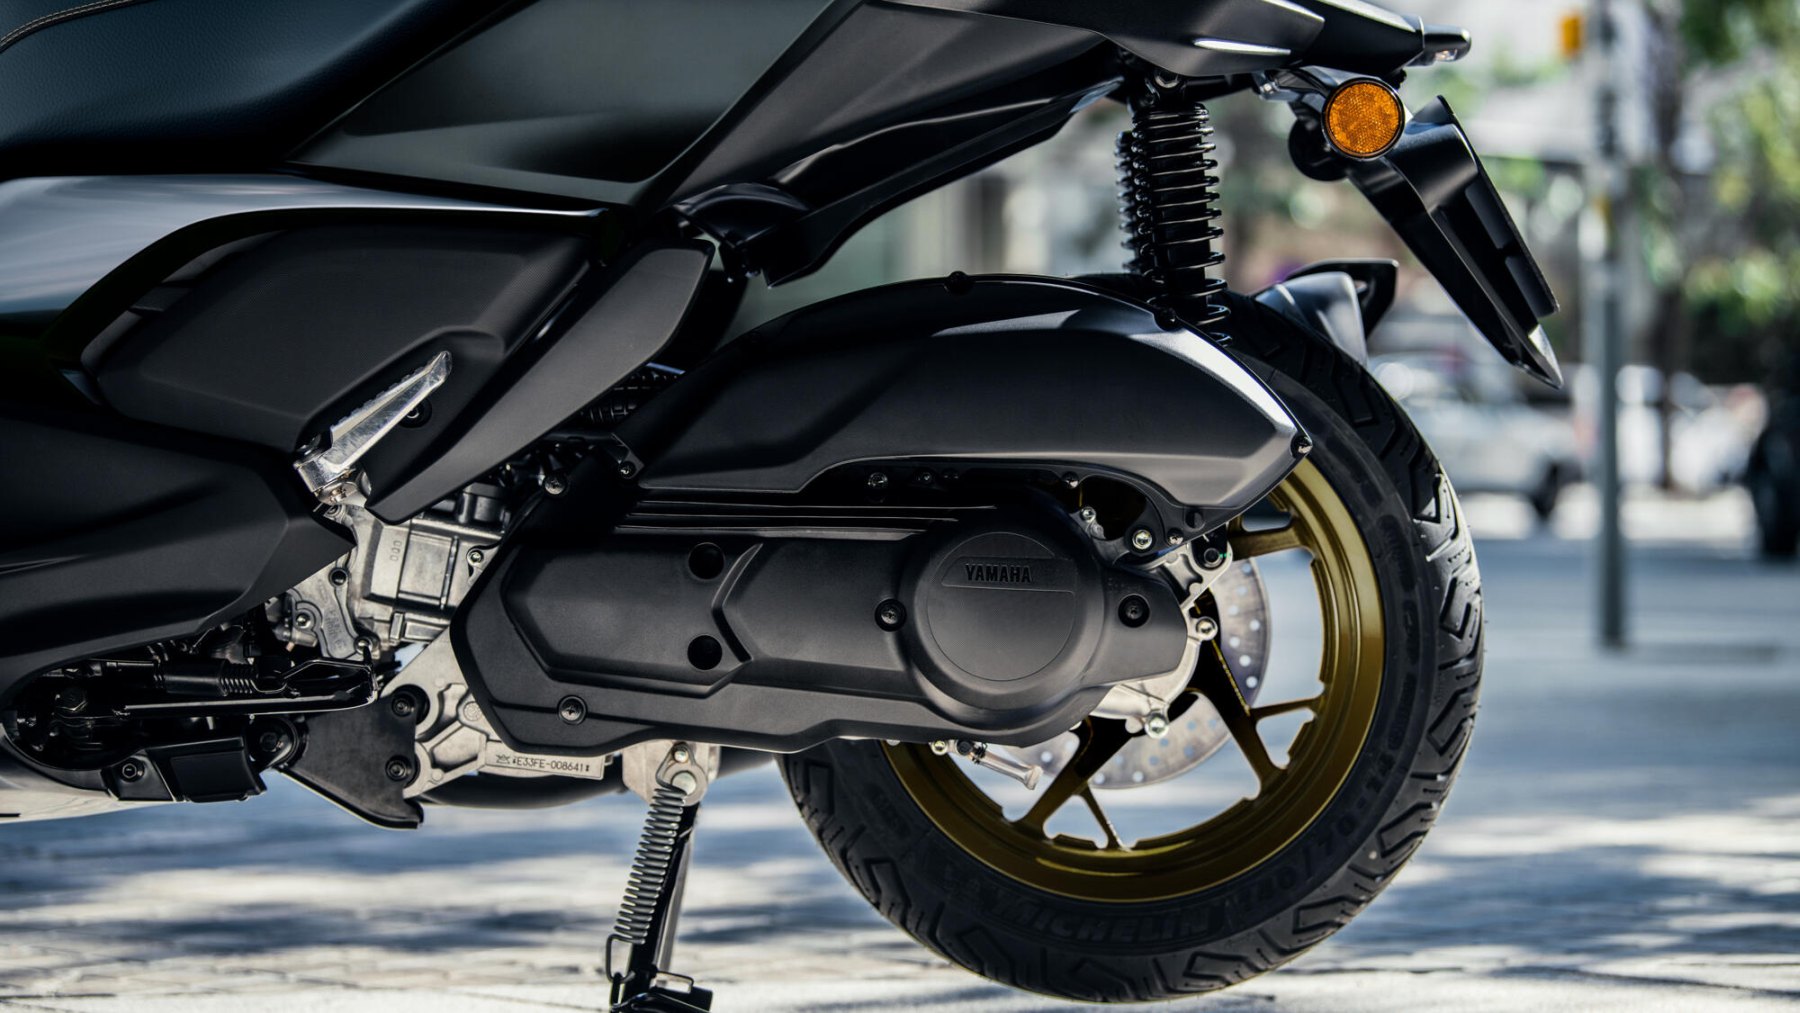 Vista detallada del sistema de suspensión y la rueda trasera dorada de la Yamaha X-Max 125cc.